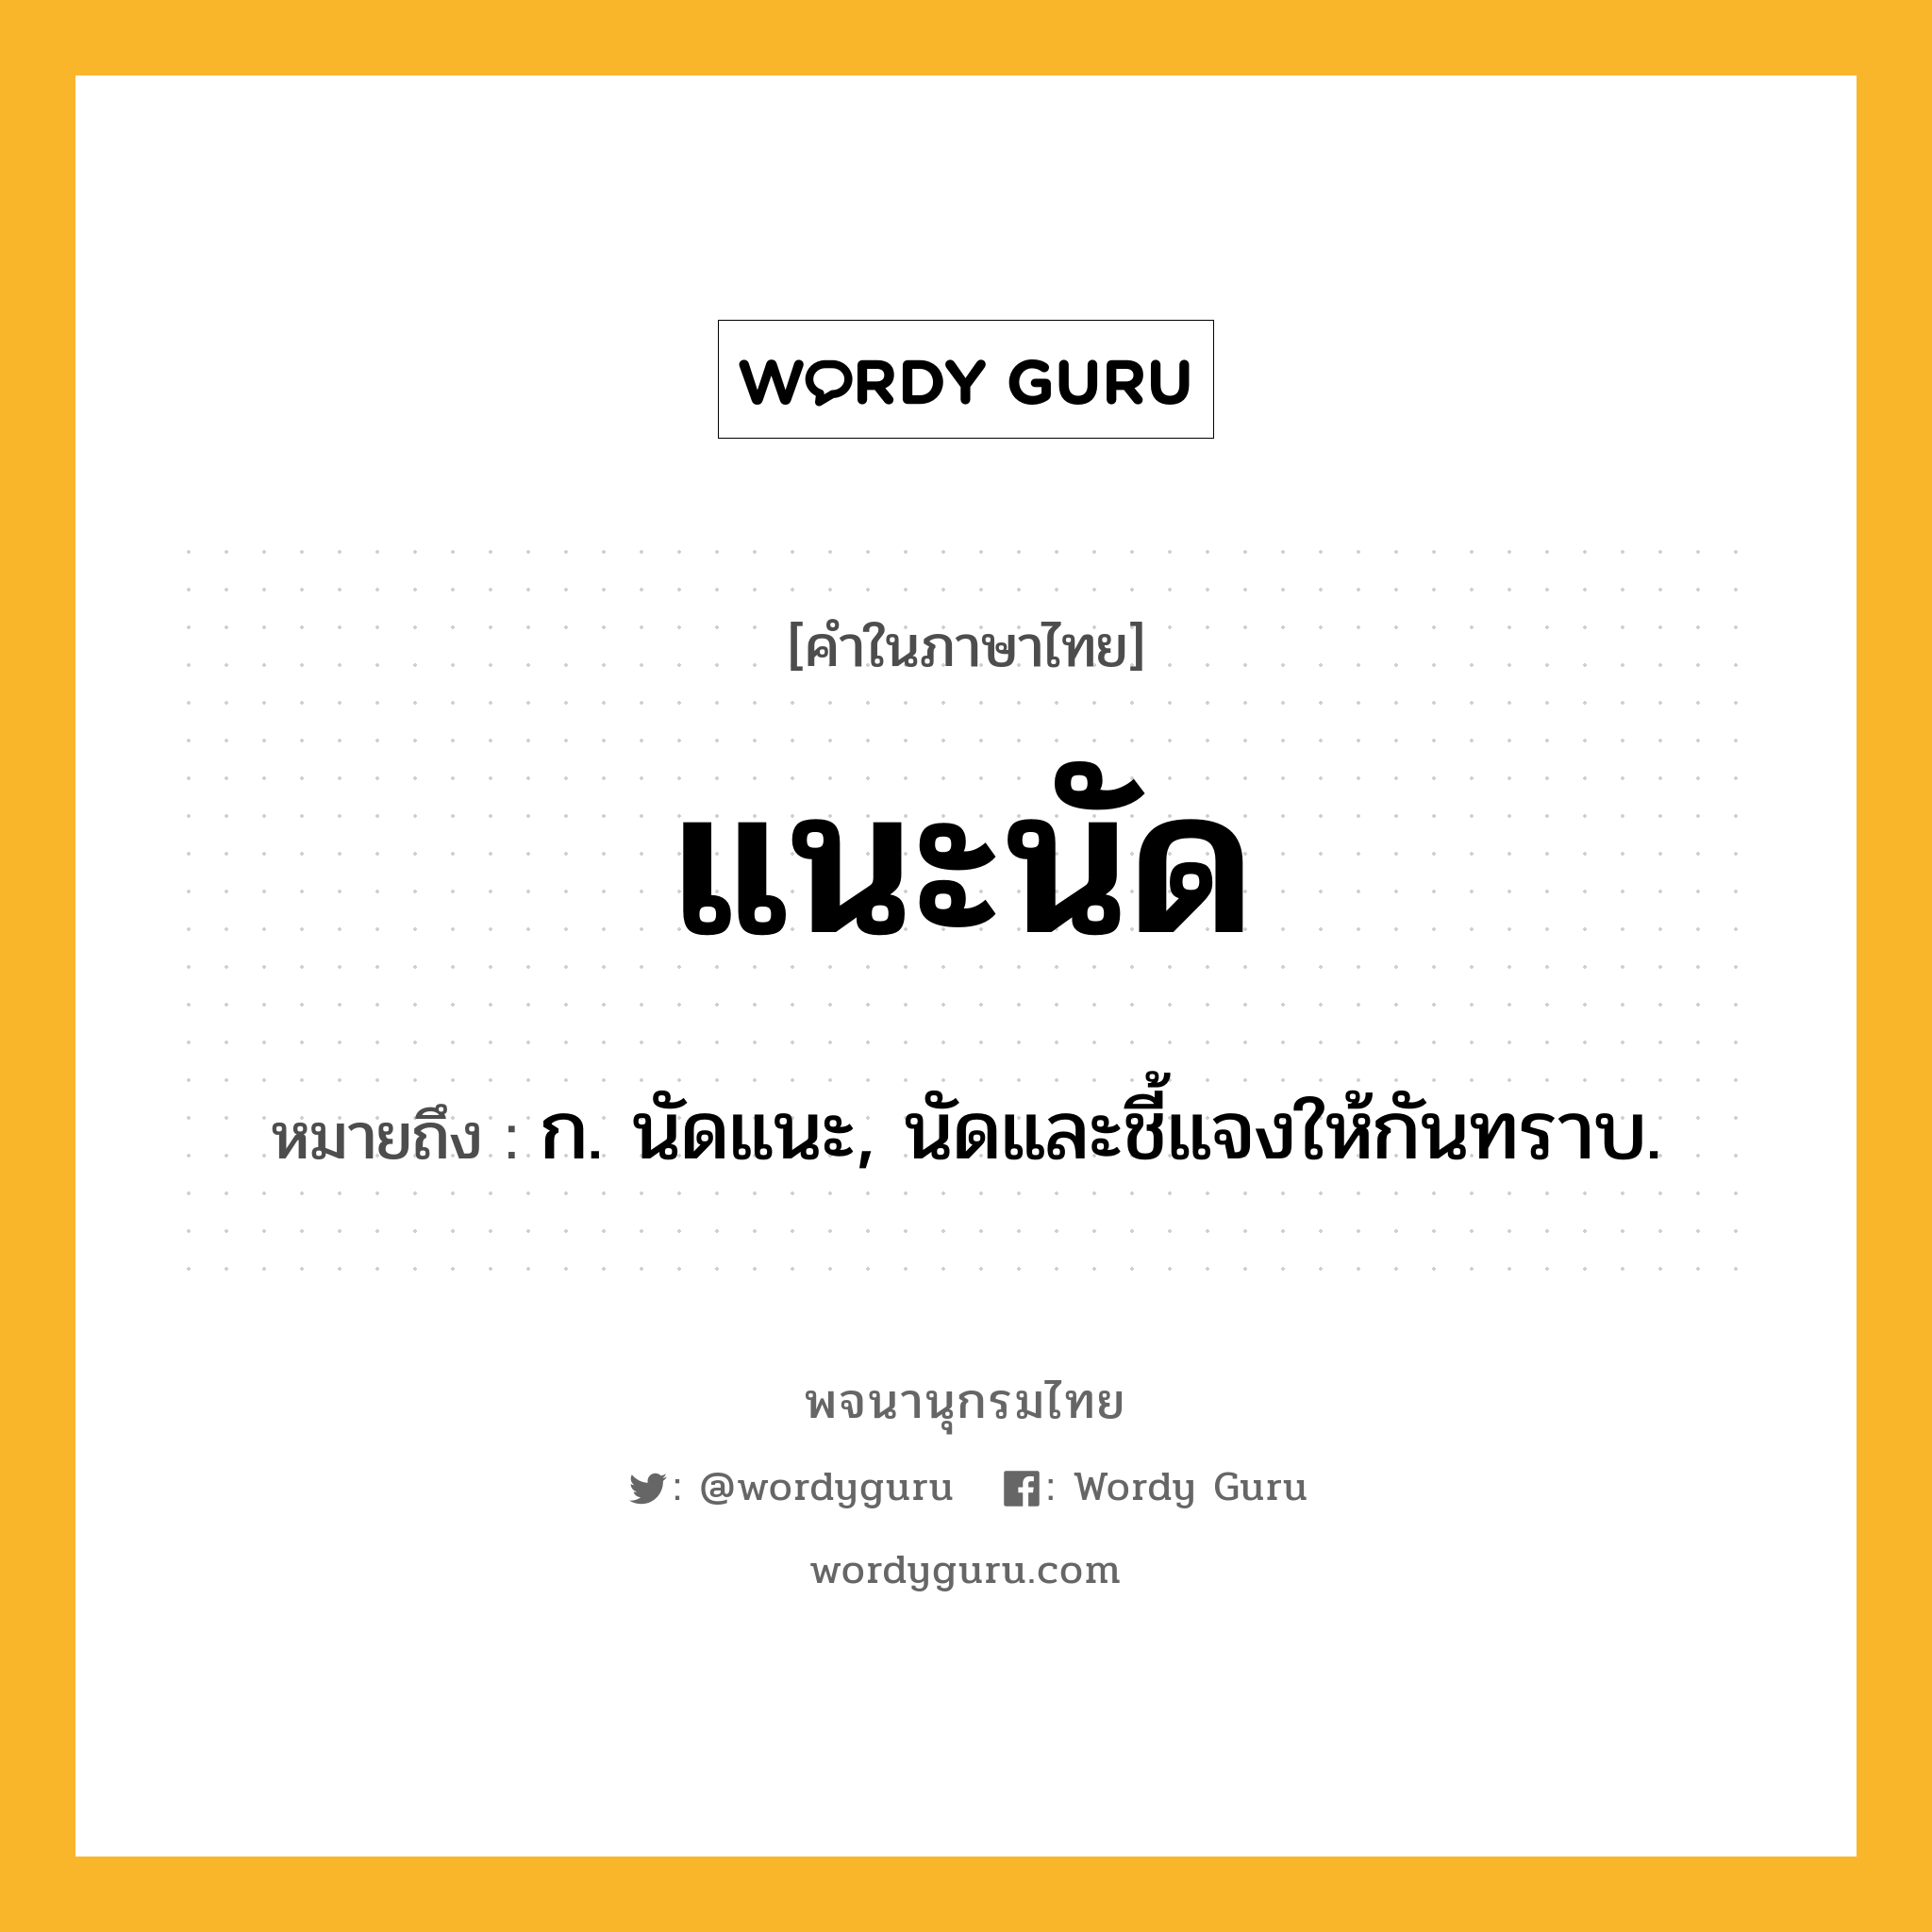 แนะนัด หมายถึงอะไร?, คำในภาษาไทย แนะนัด หมายถึง ก. นัดแนะ, นัดและชี้แจงให้กันทราบ.